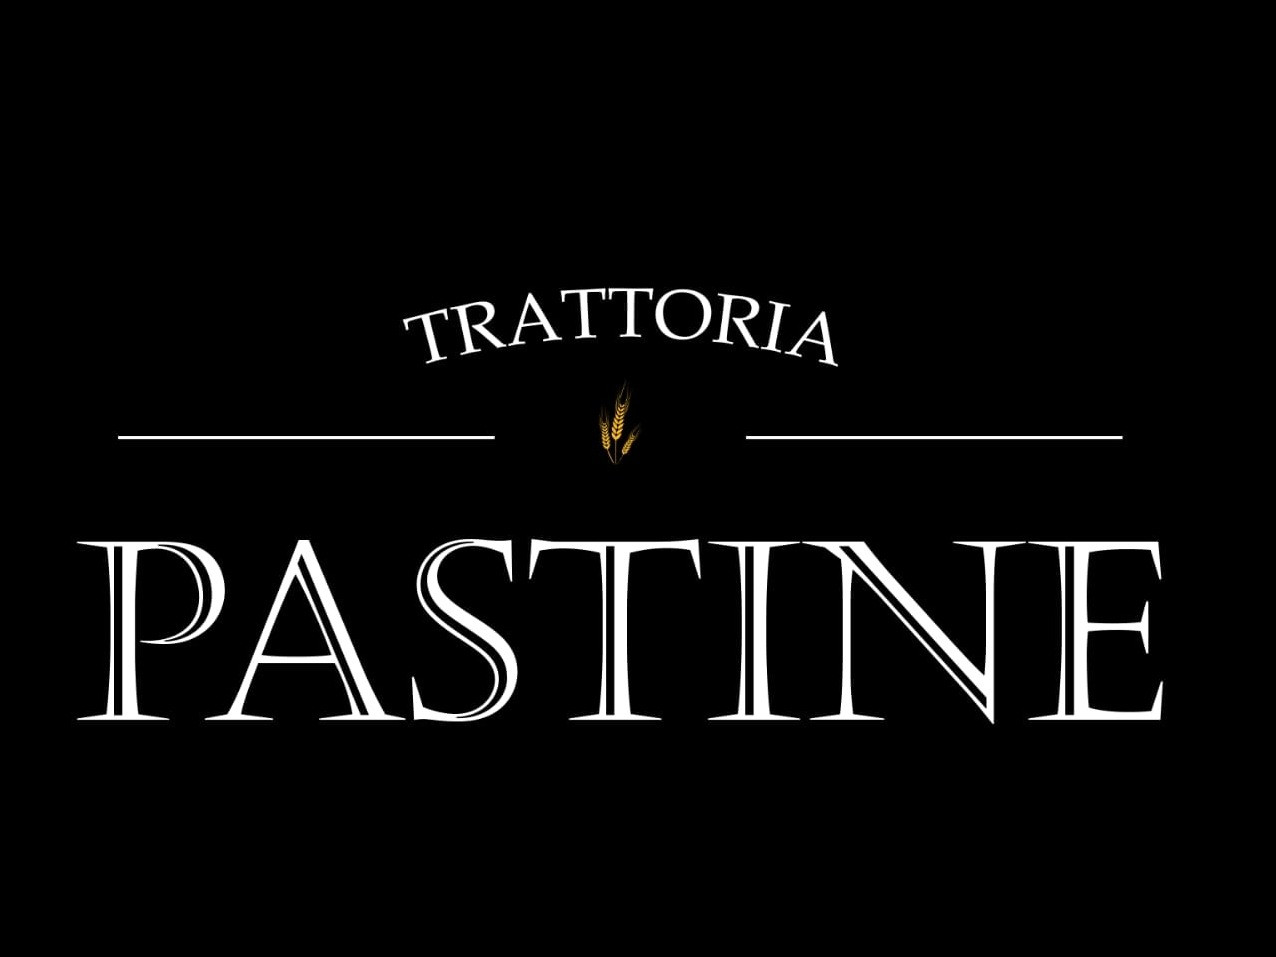 Logotipo Trattoria Pastine Garibaldi